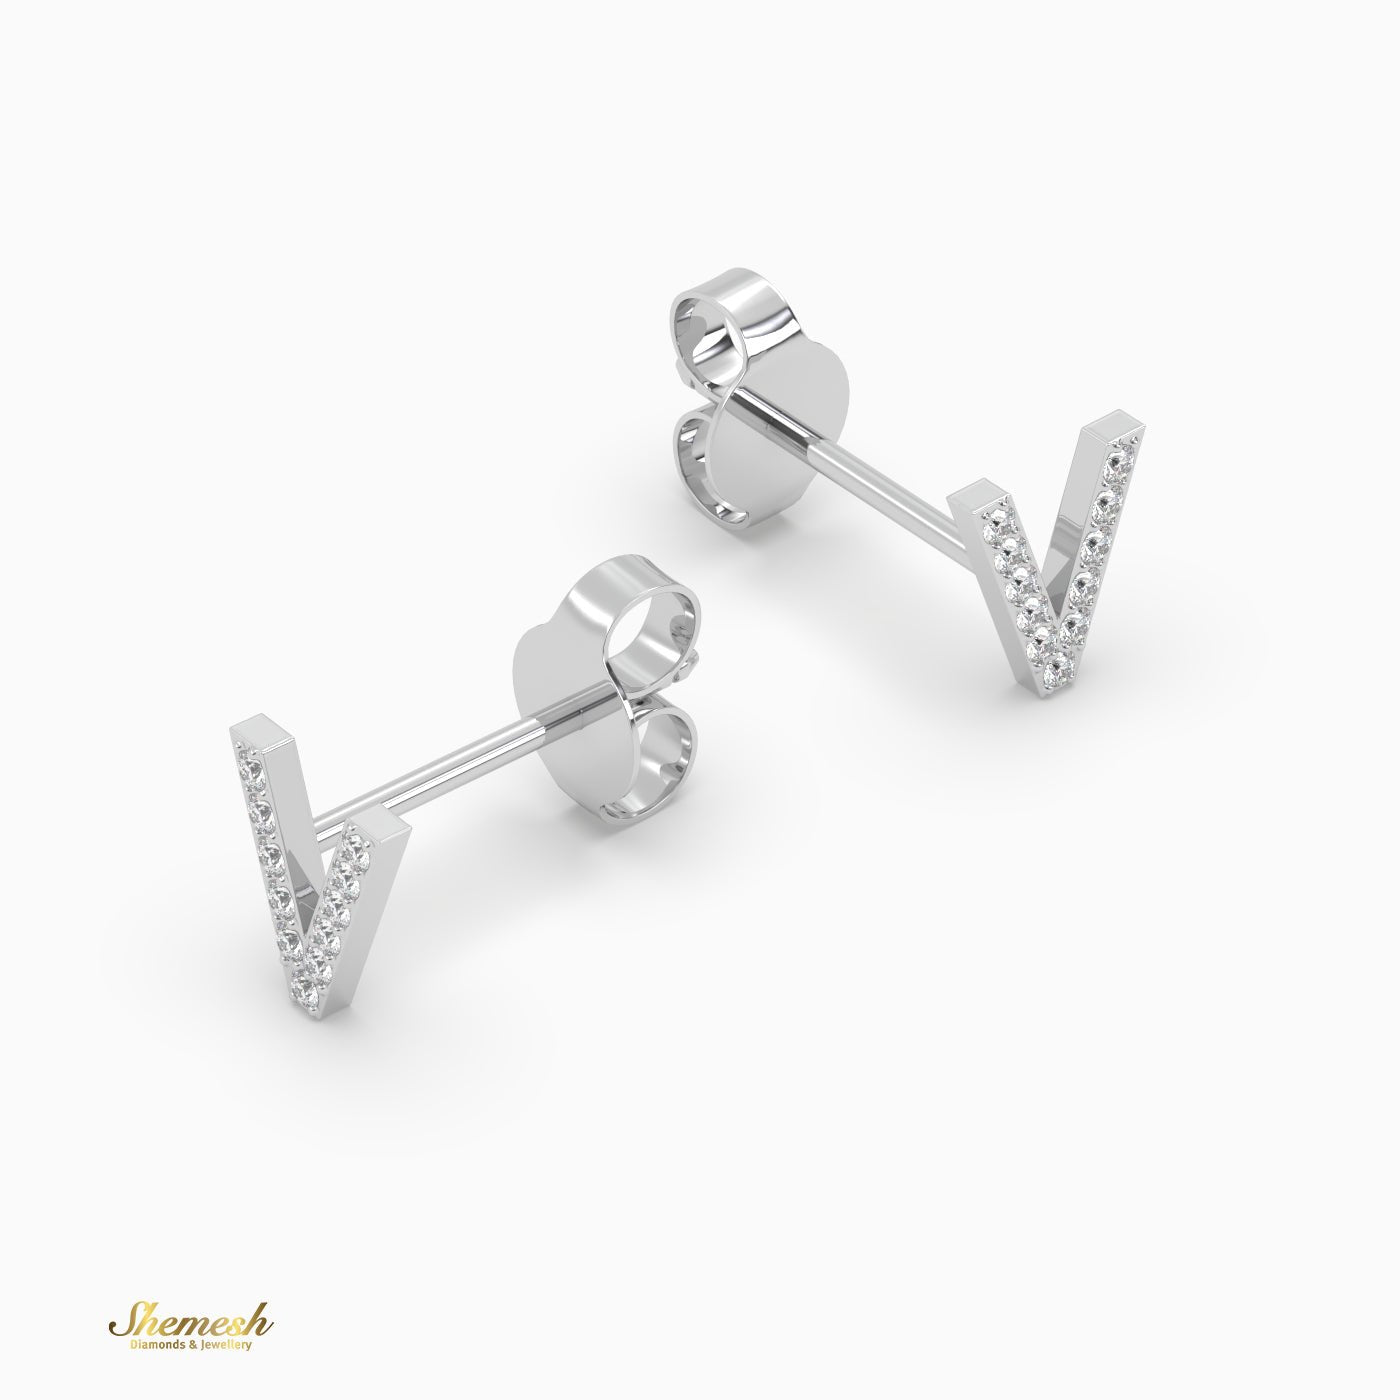 18K Gold "V" Initial Stud Earrings - shemesh_diamonds